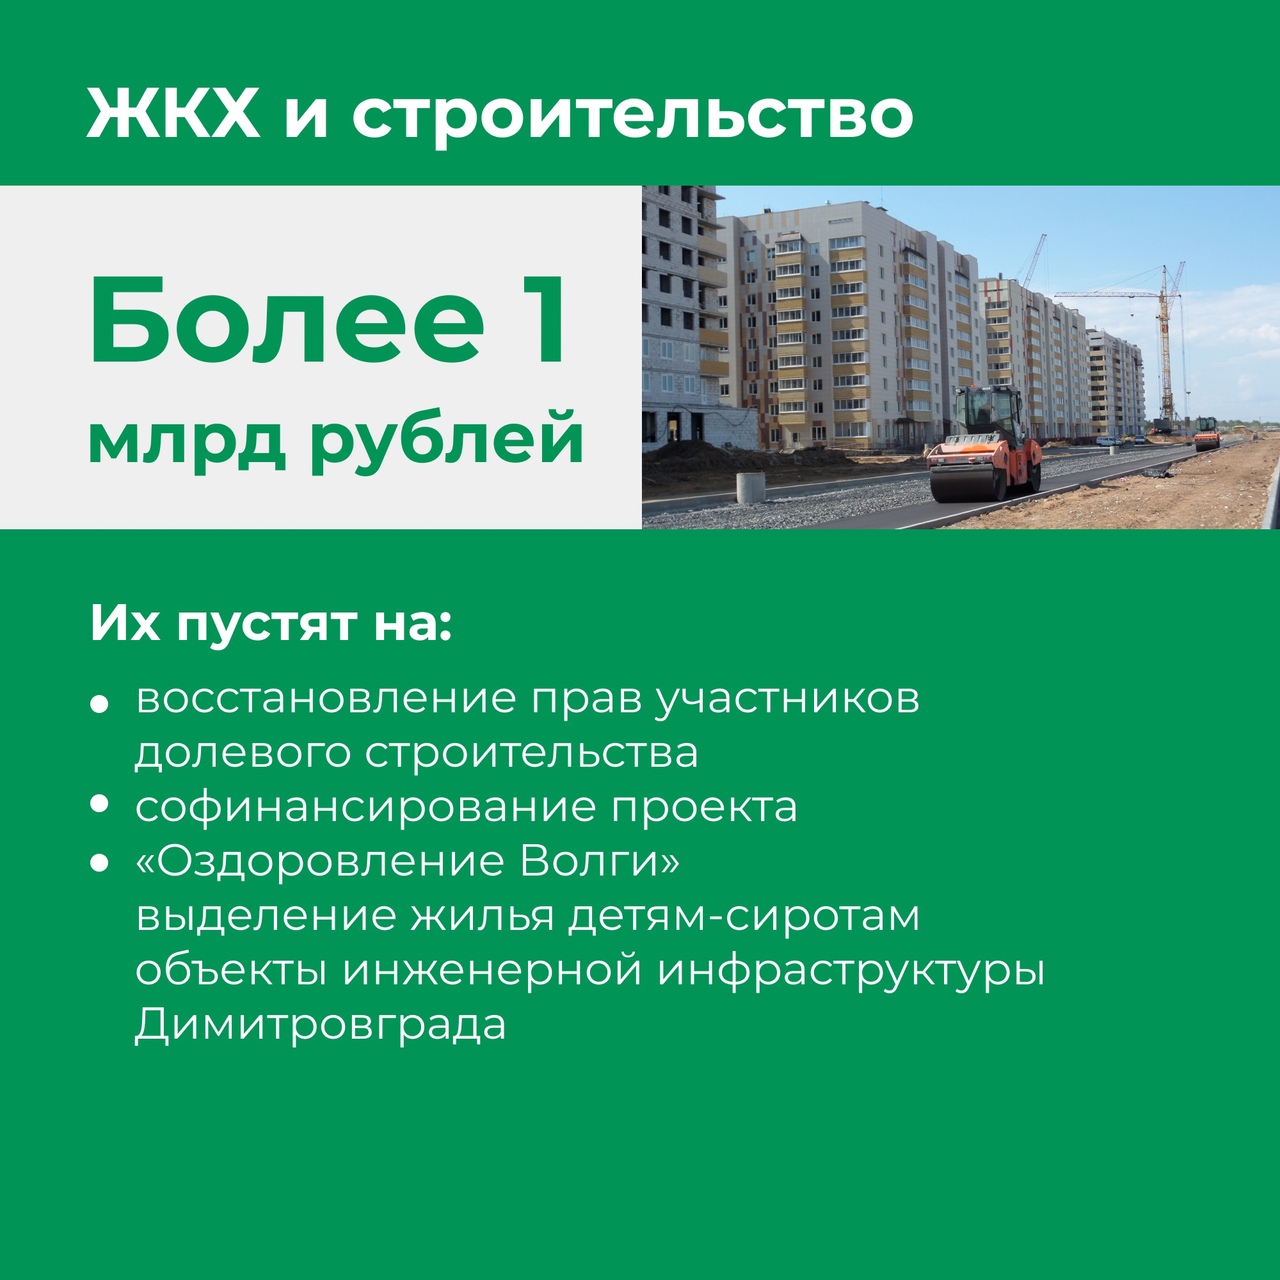 На развитие и модернизацию инженерной инфраструктуры Димитровграда будут выделены дополнительные средства из областного бюджета.